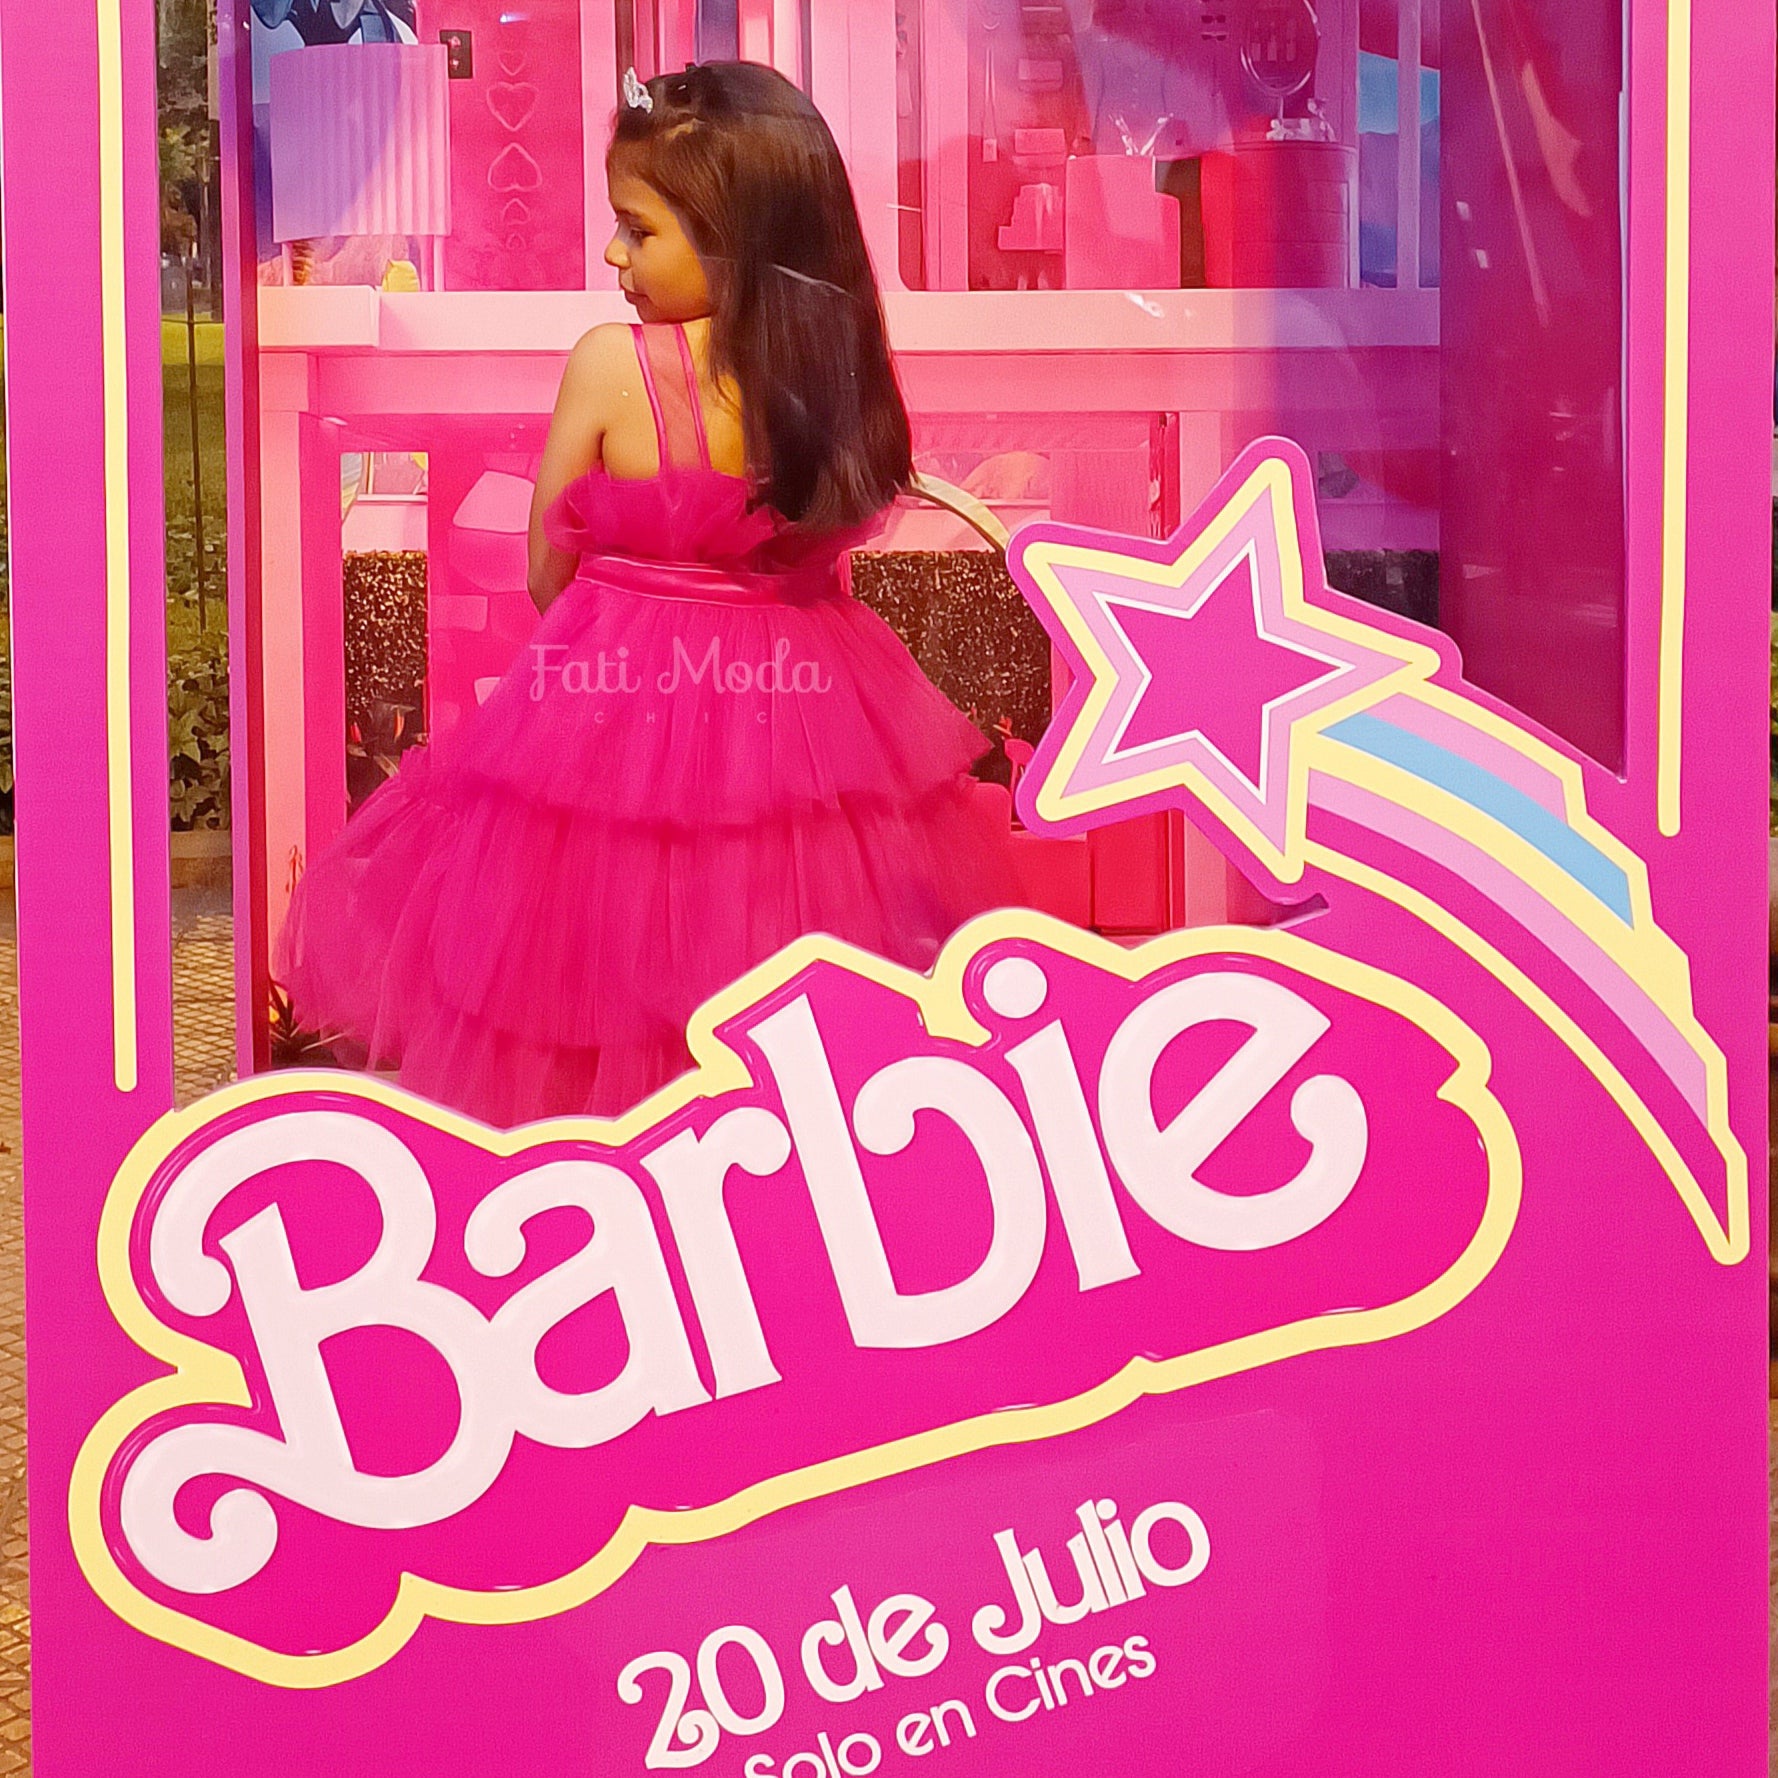 BARBIE Vestido Barbie sin manga para niña